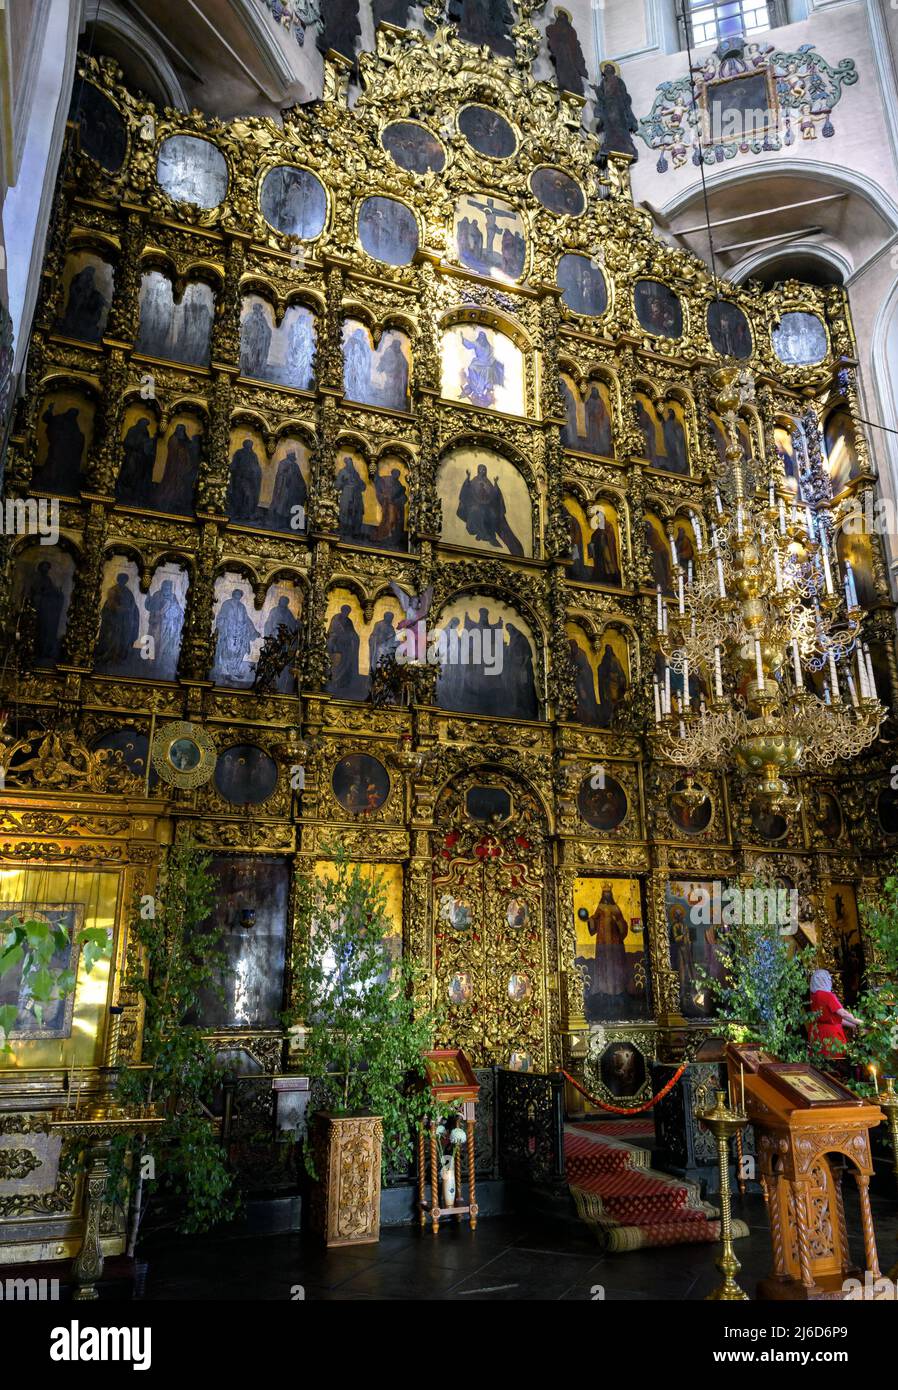 Kasan, Russland - 19. Juni 2021: Innenraum der Kathedrale der Heiligen Peter und Paul, Kasan, Tatarstan. Luxus verzierten Altar der russisch-orthodoxen Kirche, insid Stockfoto